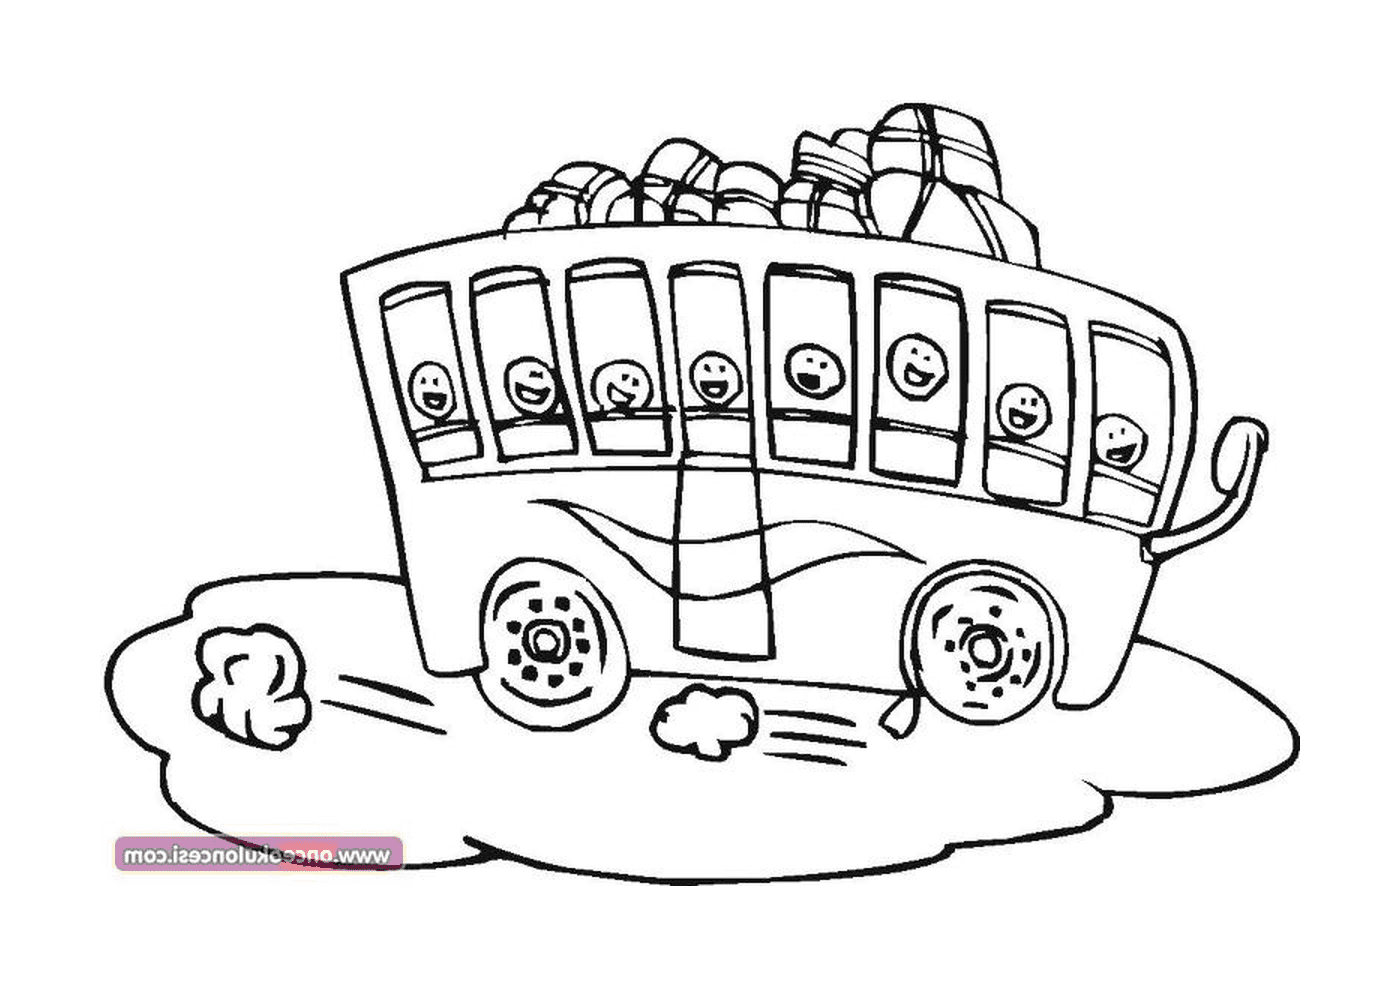   Un bus avec de nombreux visages dessinés dessus 